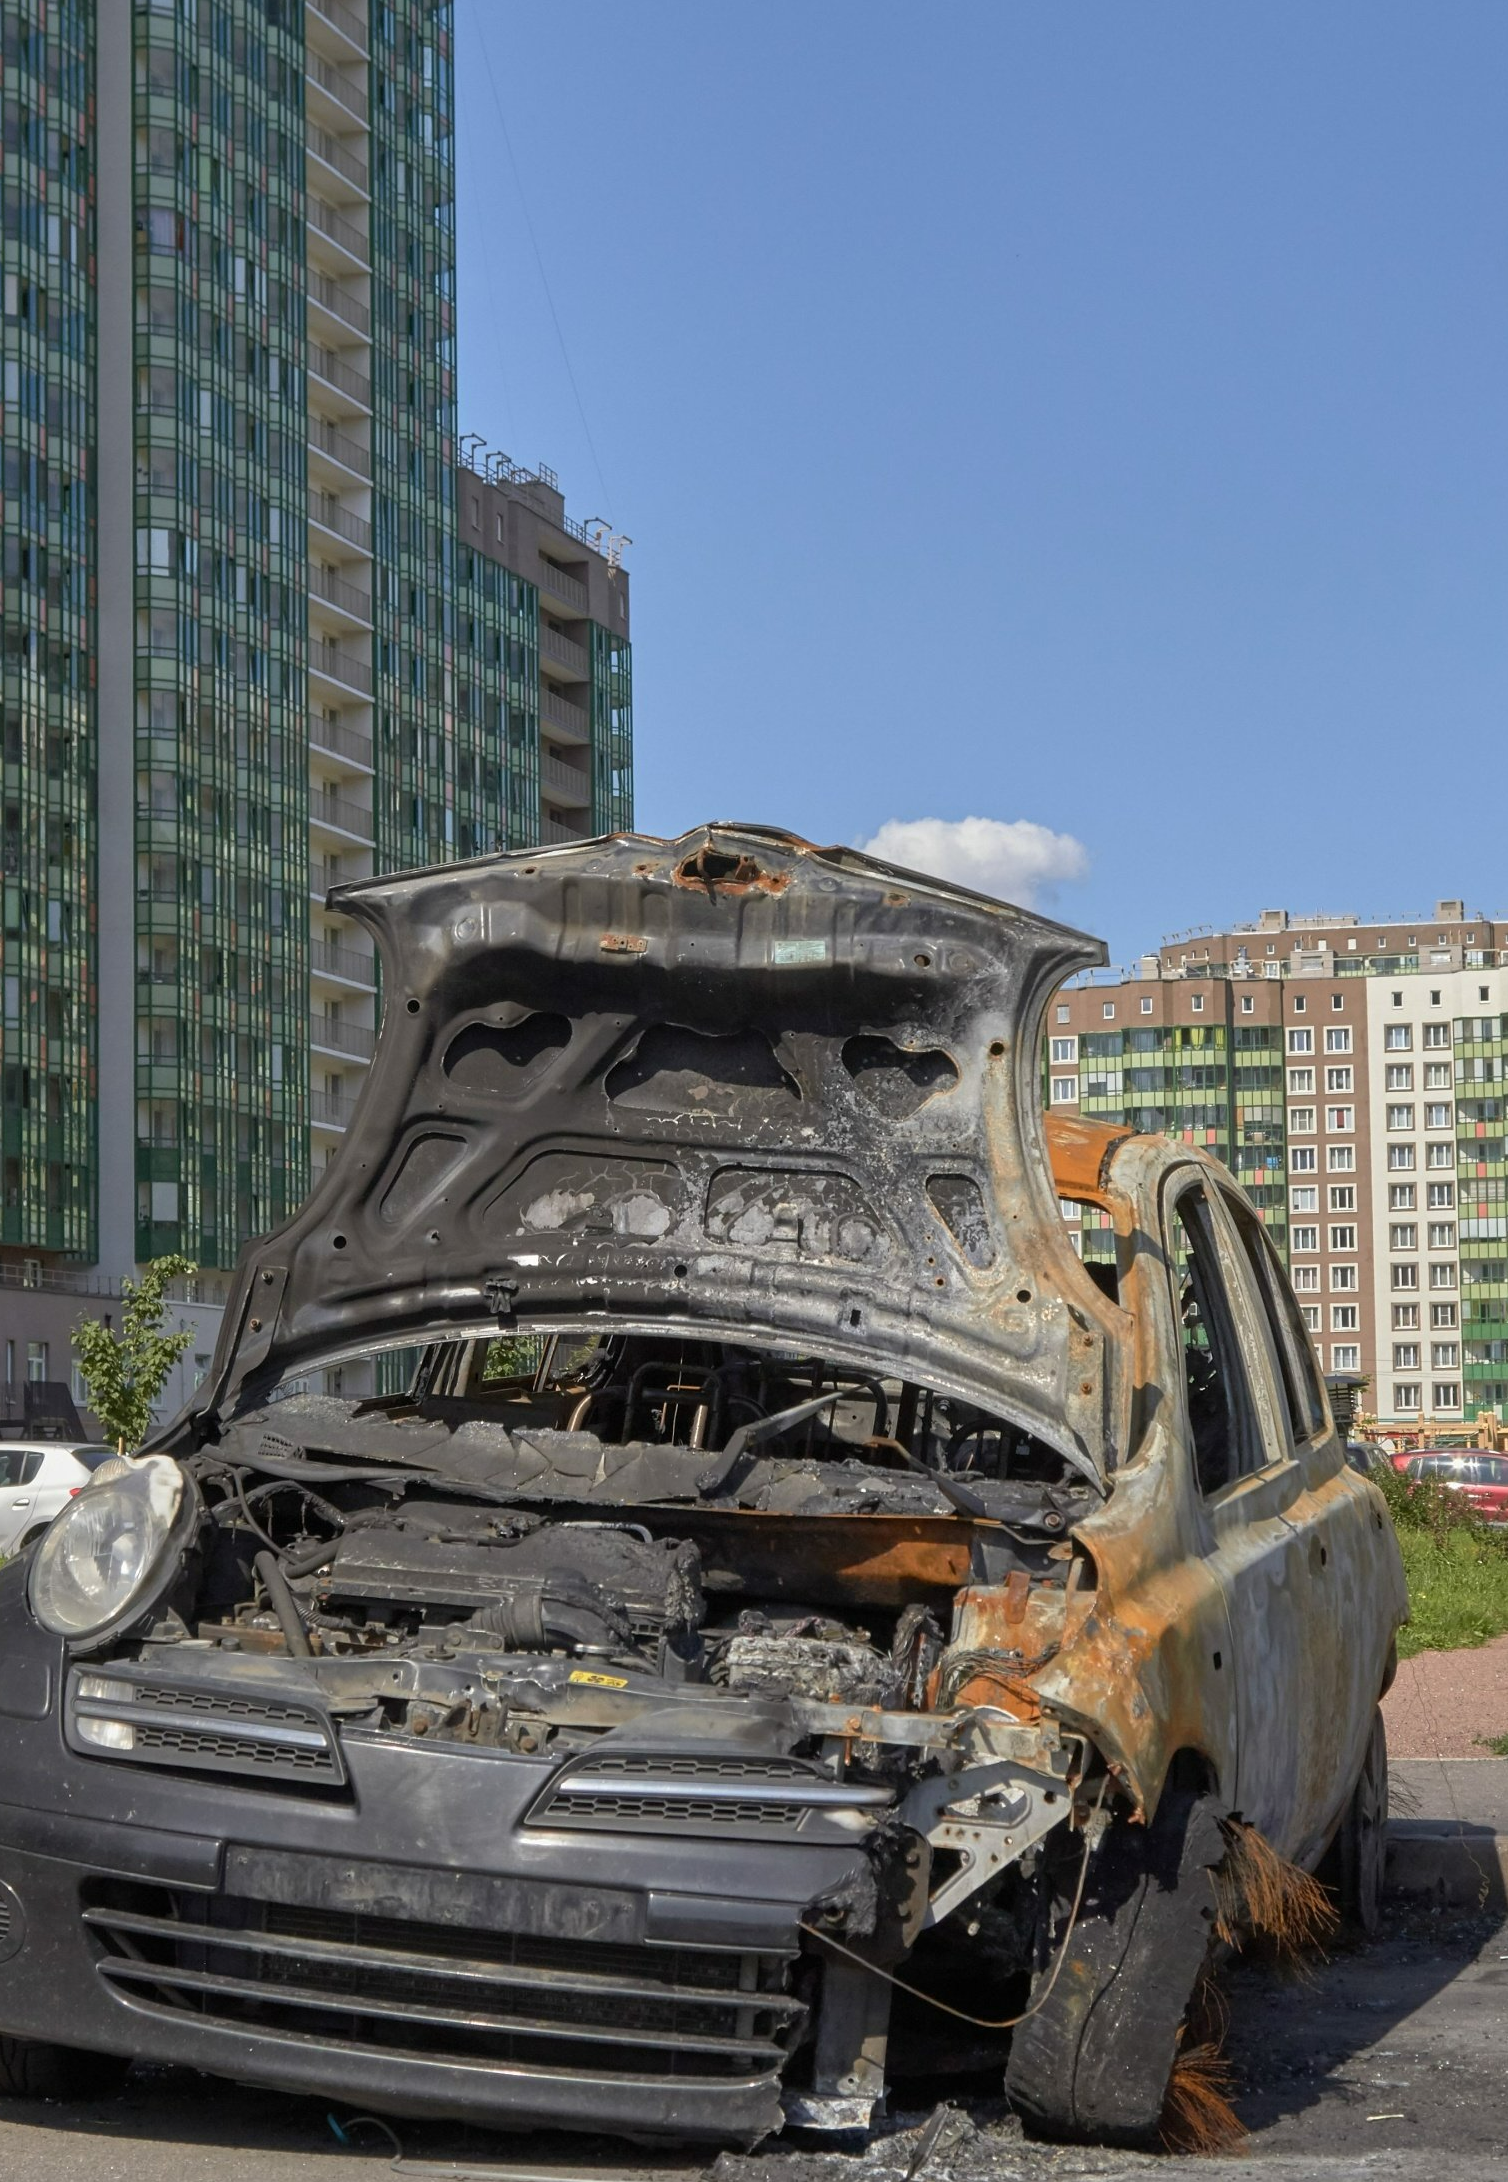 Carcasse de voiture brûlée